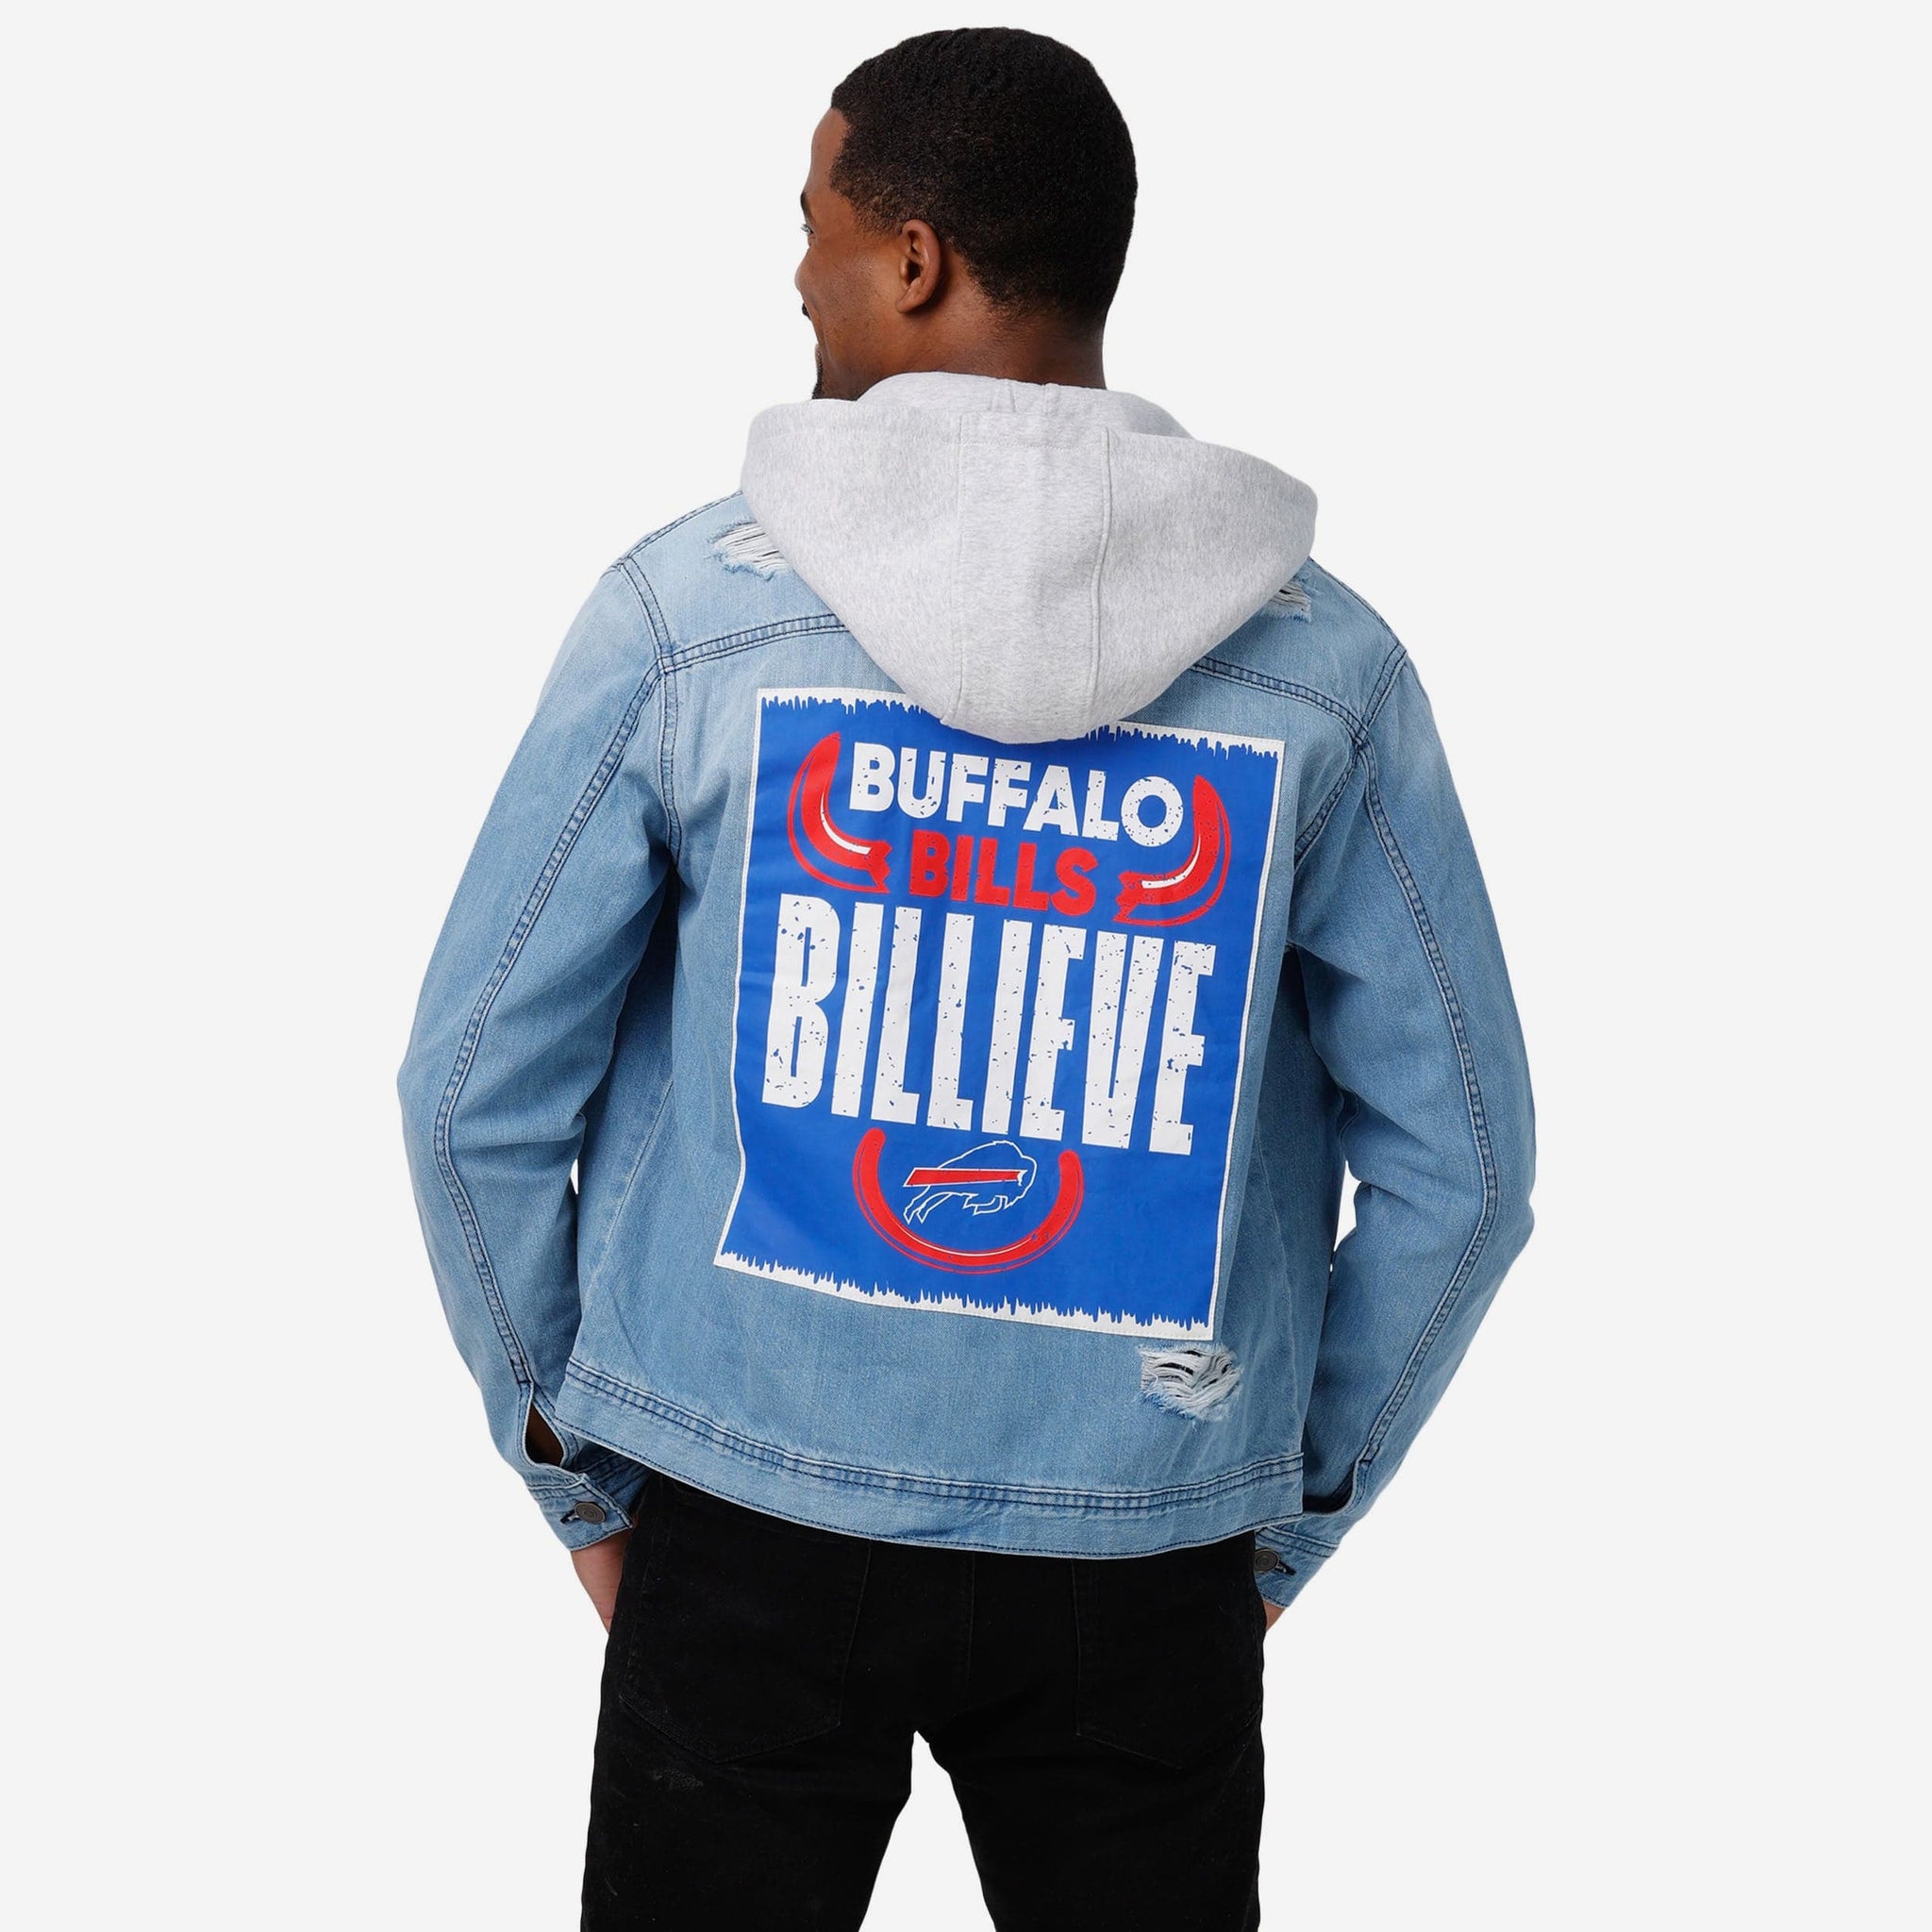 buffalo bills denim jacket